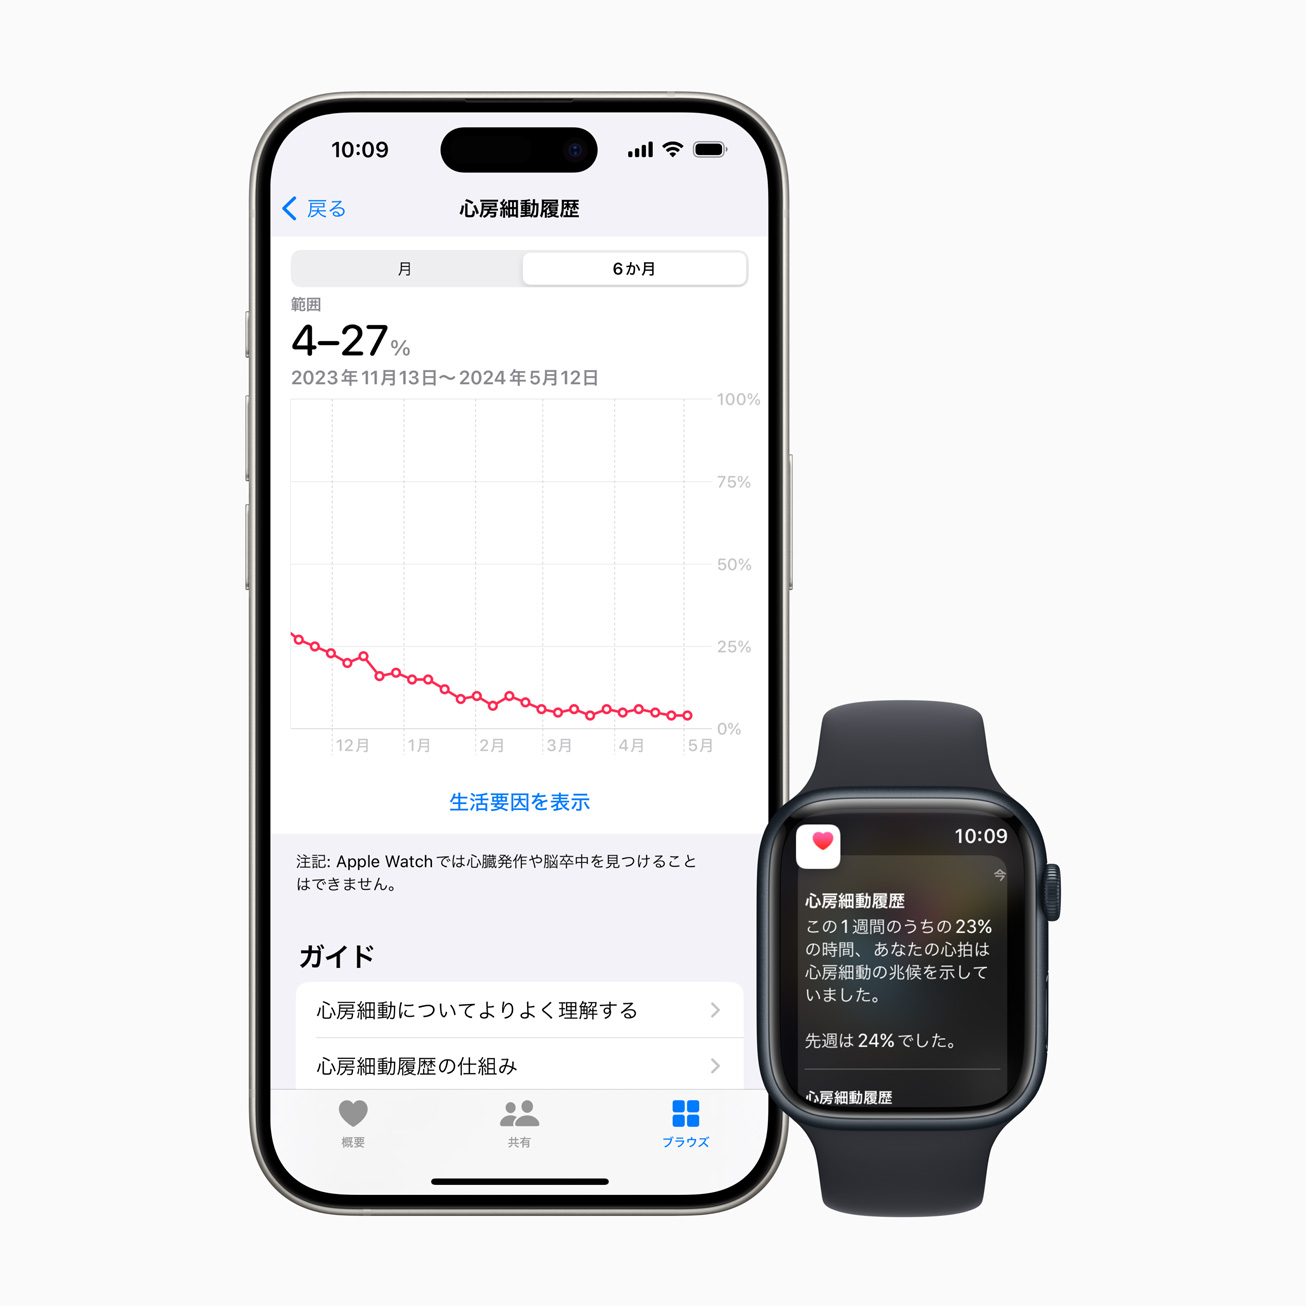 アップル、日本でApple Watchの心房細動履歴機能の提供を開始。利用できるのは心房細動と診断されたユーザーのみ